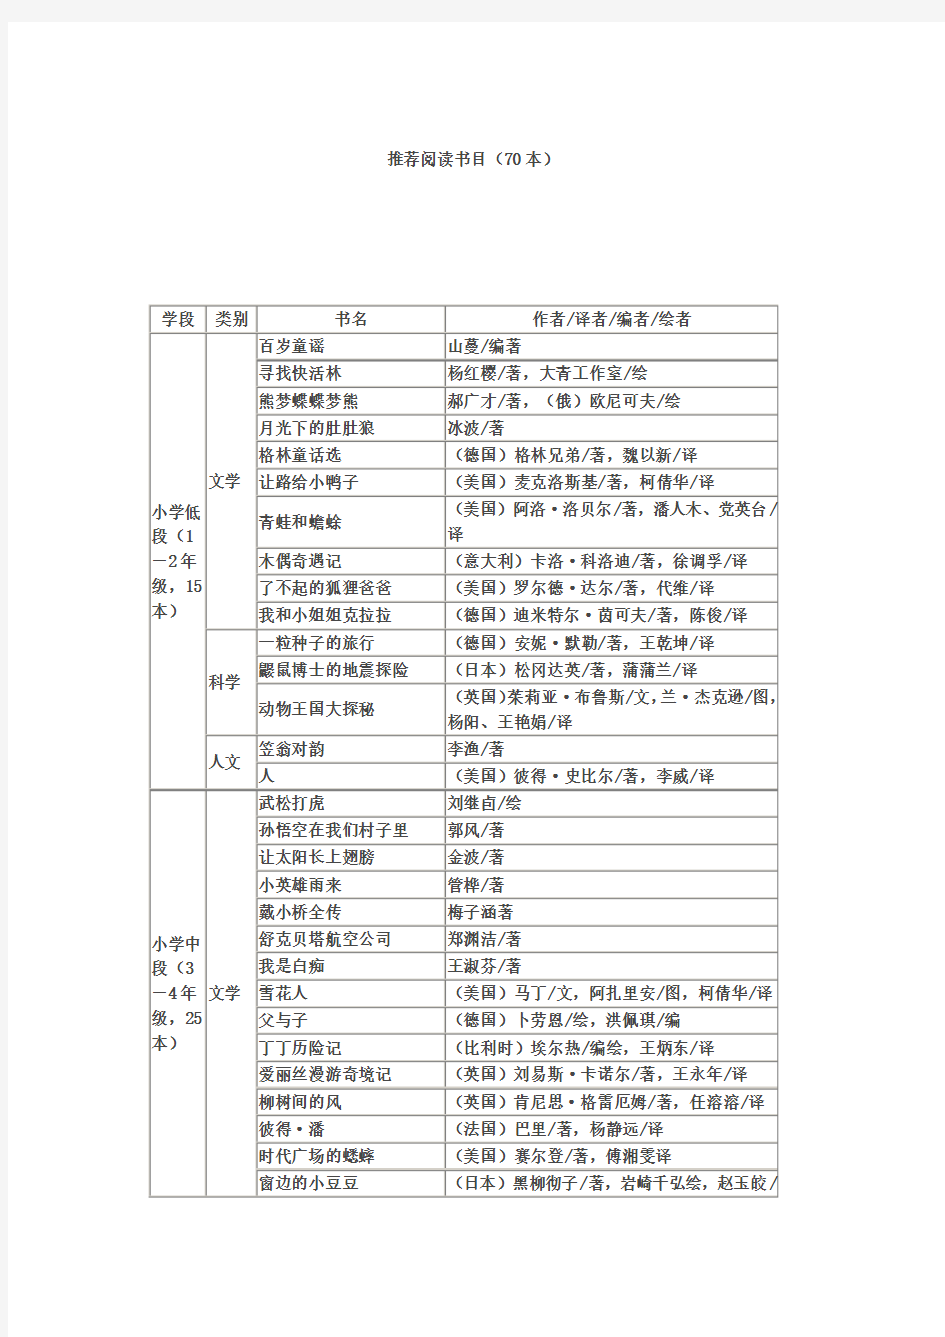 朱永新推荐30本中国小学生基础阅读书目